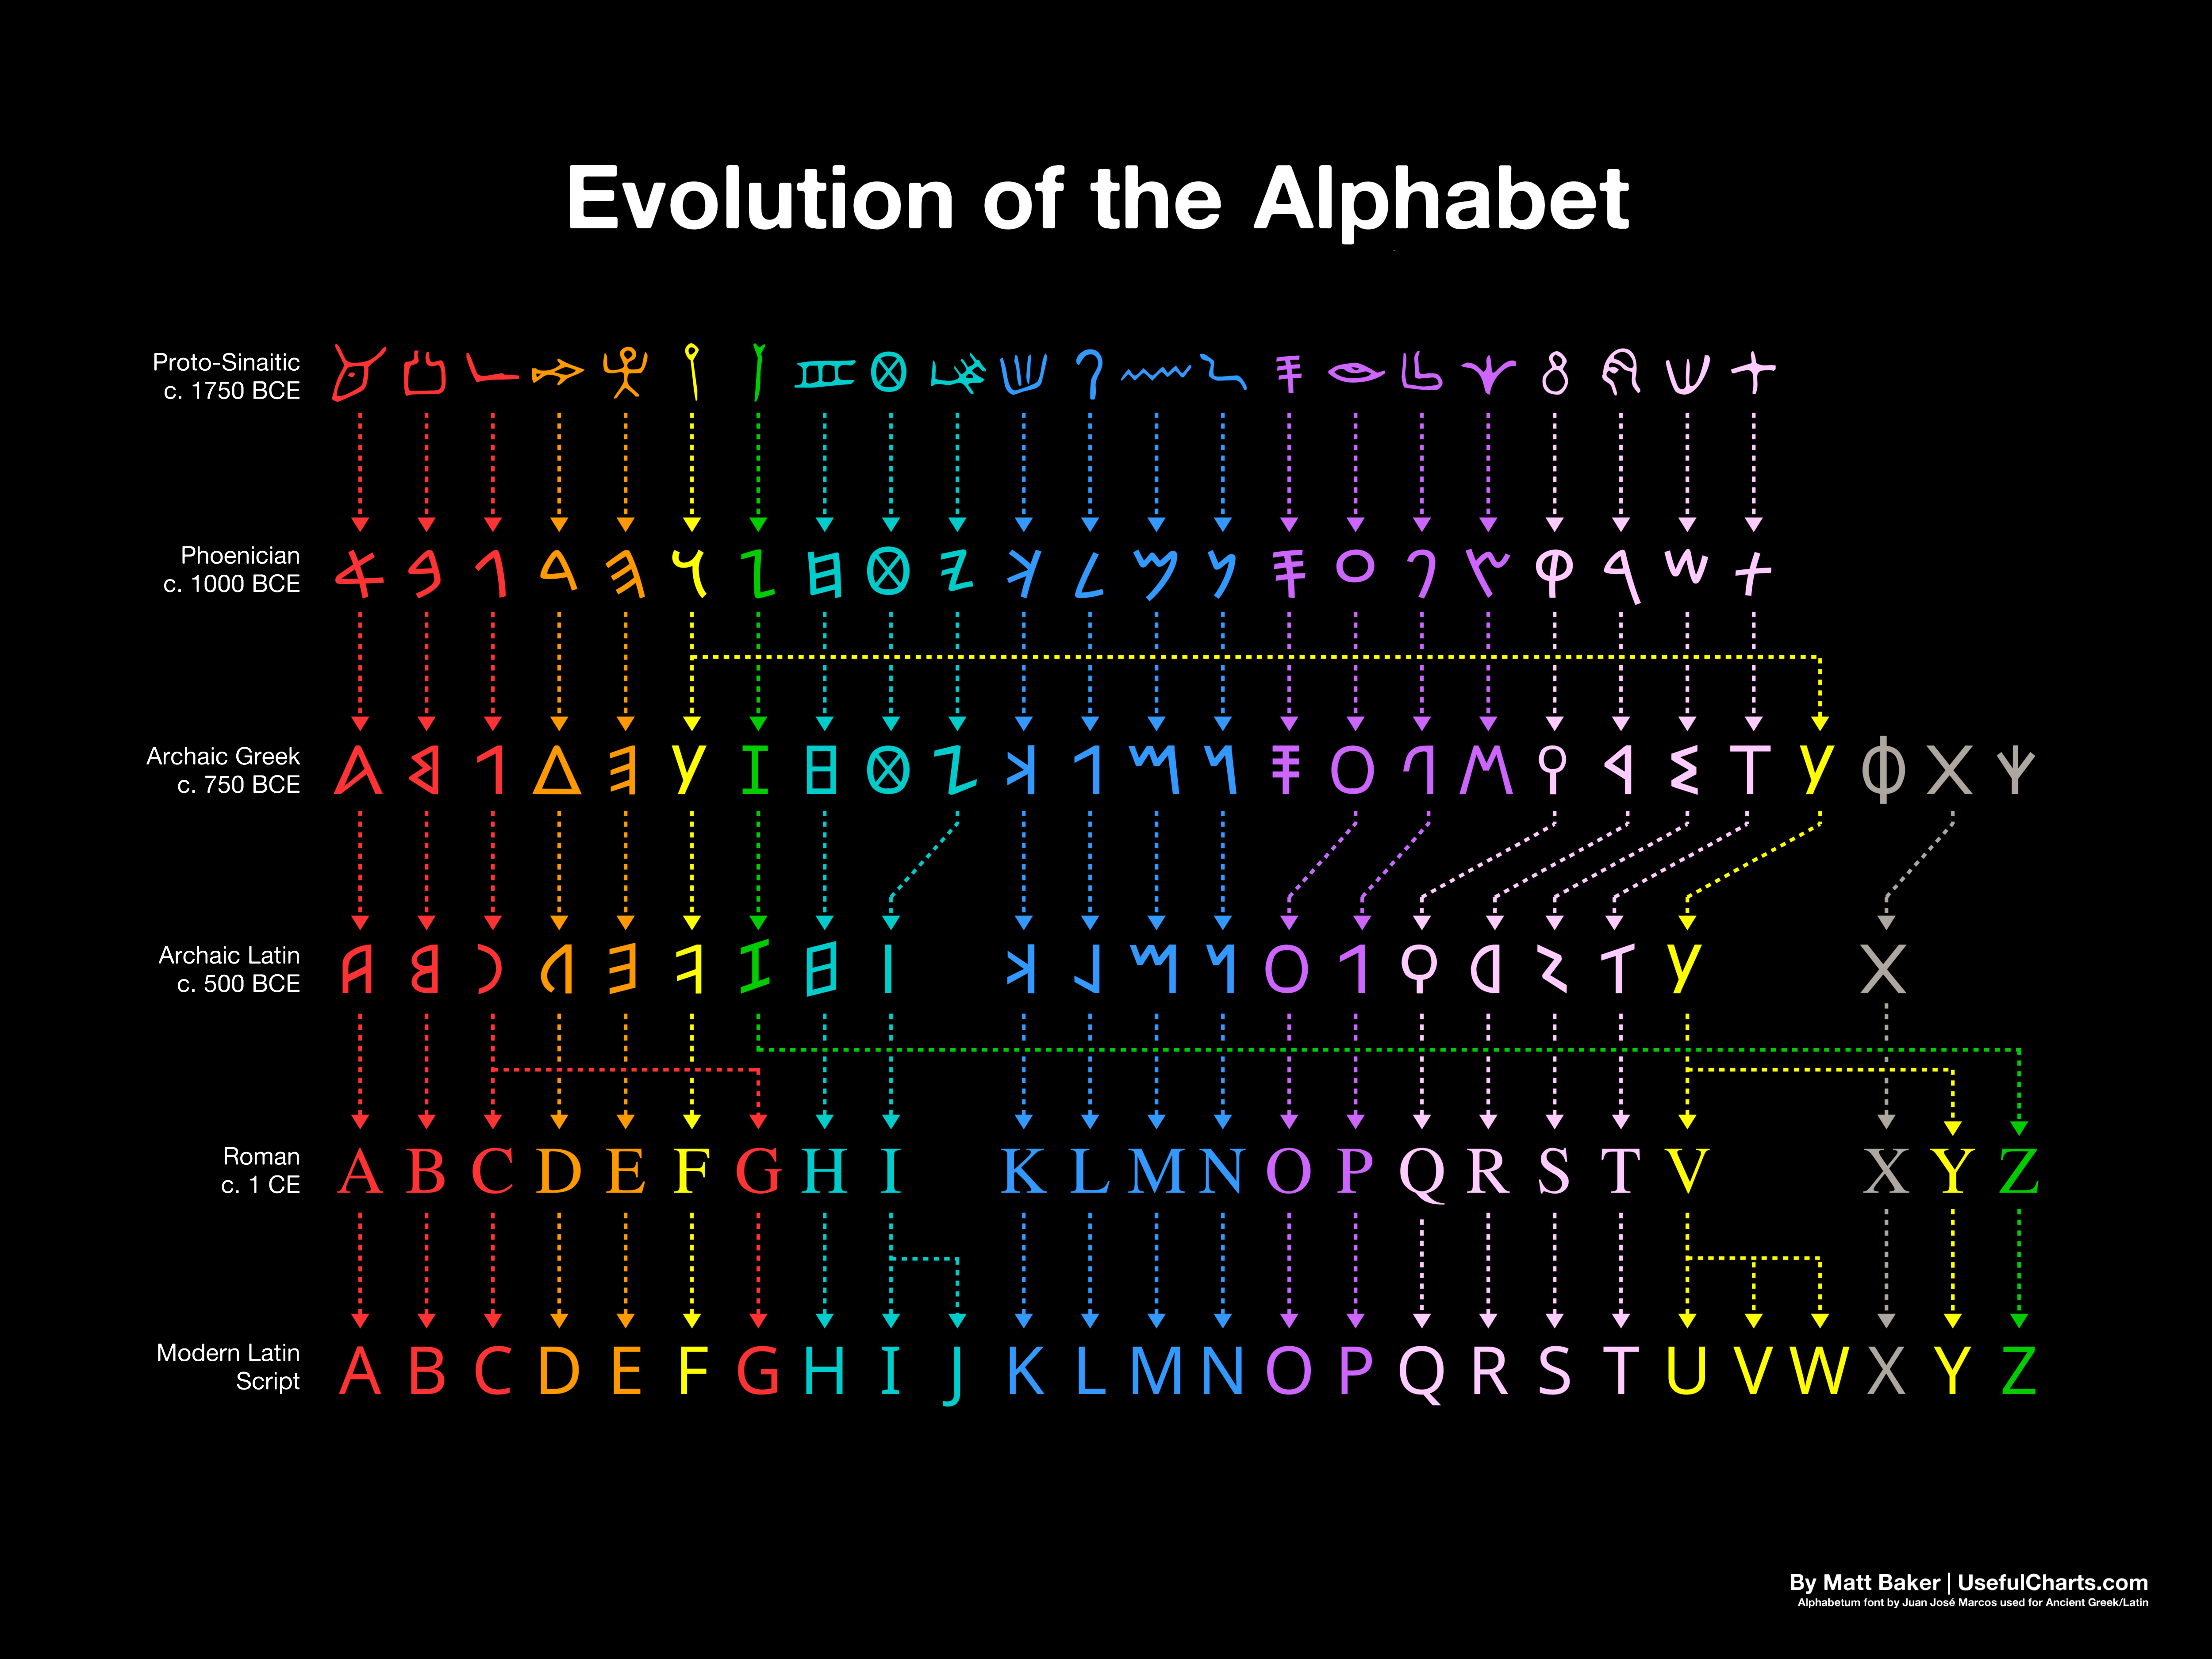 evolution of latin alphabet - Evolution of the Alphabet Promo yo r Www LV8W . 1080 Ace 4 91424102 Y Zwy 024W six imit o in dist oxy Archaic Latina c. 500 Bce iii ii myidi x 1 d l 1 Bcdefghi Klmnopqrstv Xyz demic Abcdefghijklmnopqrstuvwx Y Z By Mad Baker U